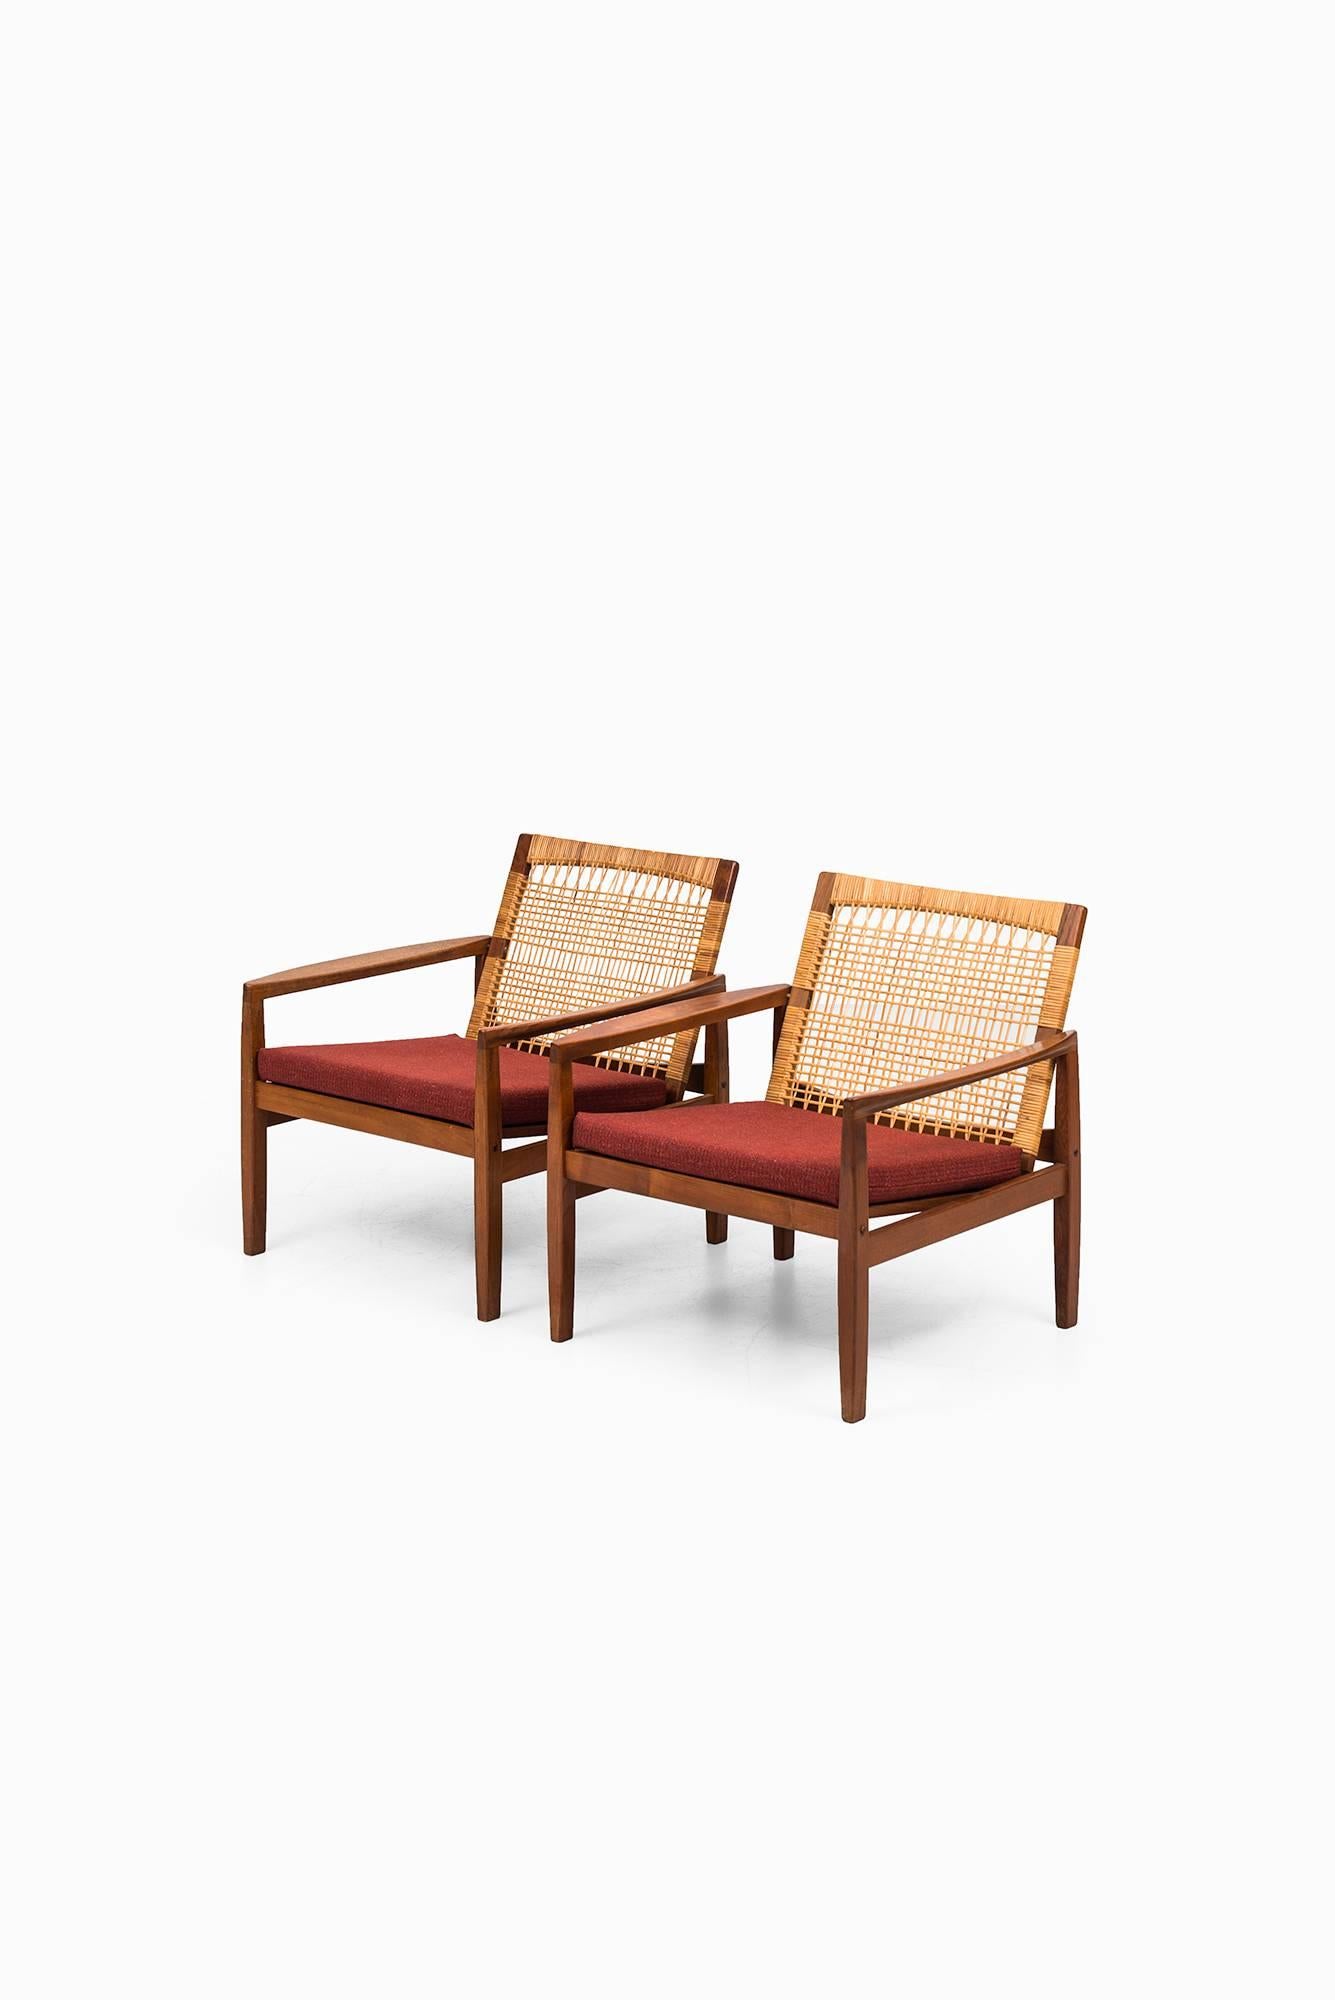 Seltenes Paar Sessel Modell 519:: entworfen von Hans Olsen. Produziert von Juul Kristensen in Dänemark.